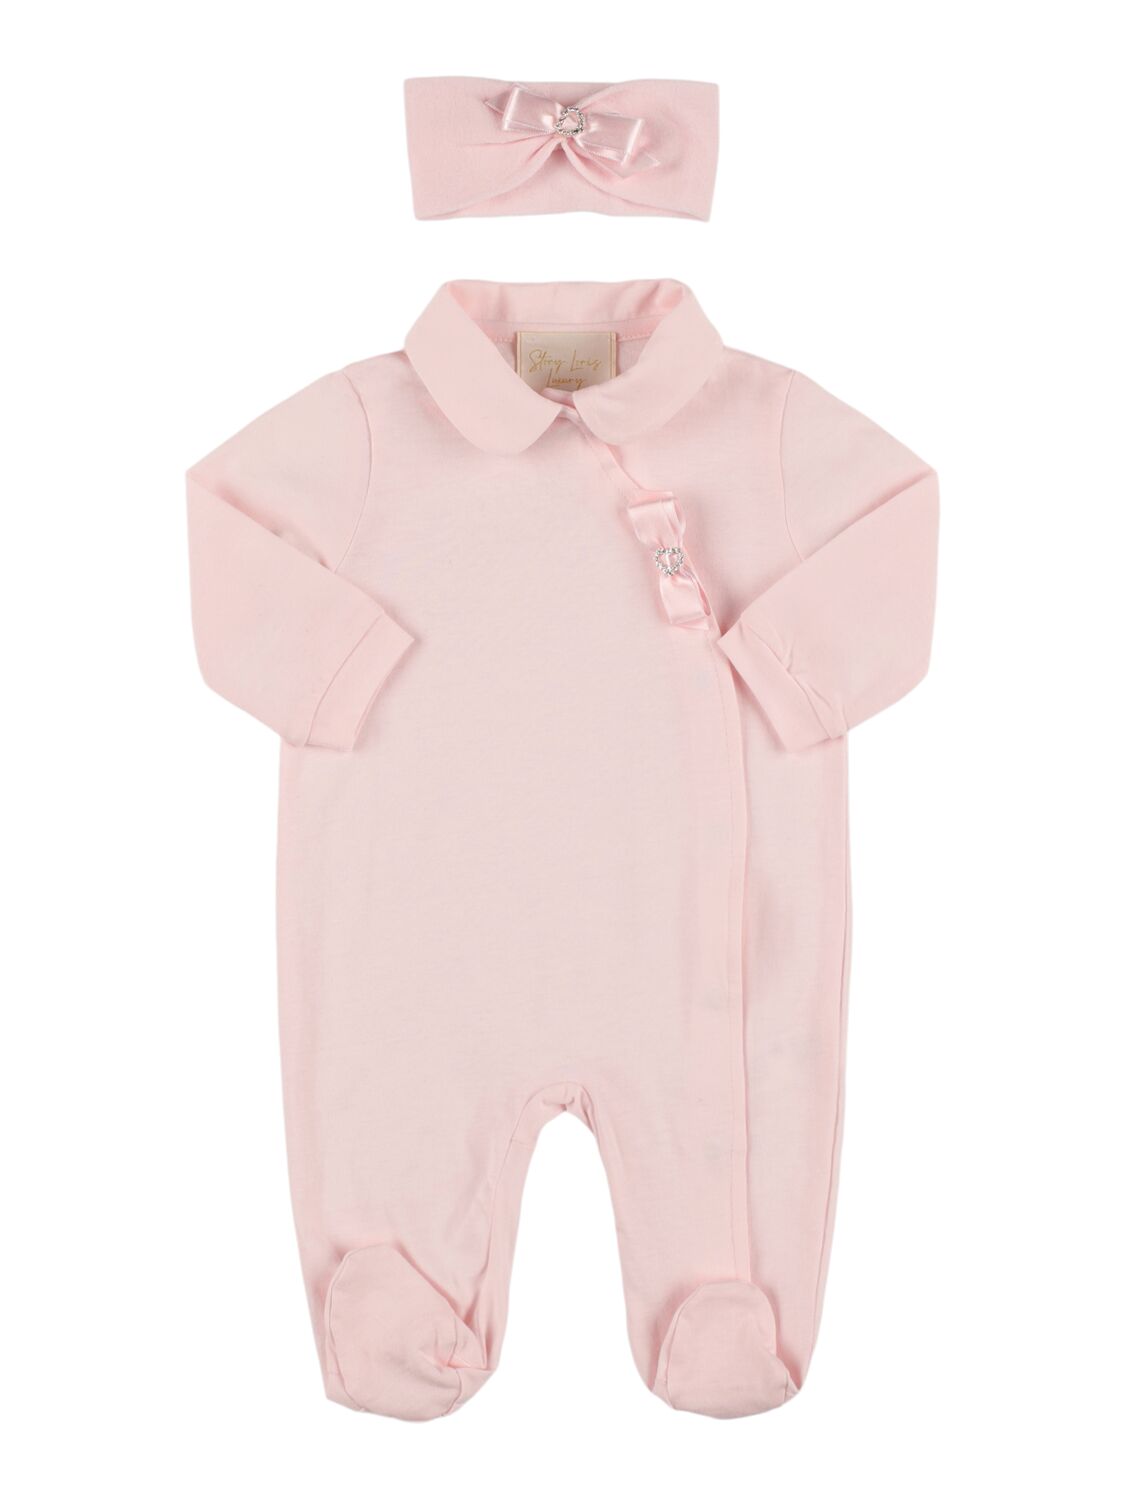 Story Loris Babies' Jersey Headband & Romper W/ Bow Appliqué In Pink